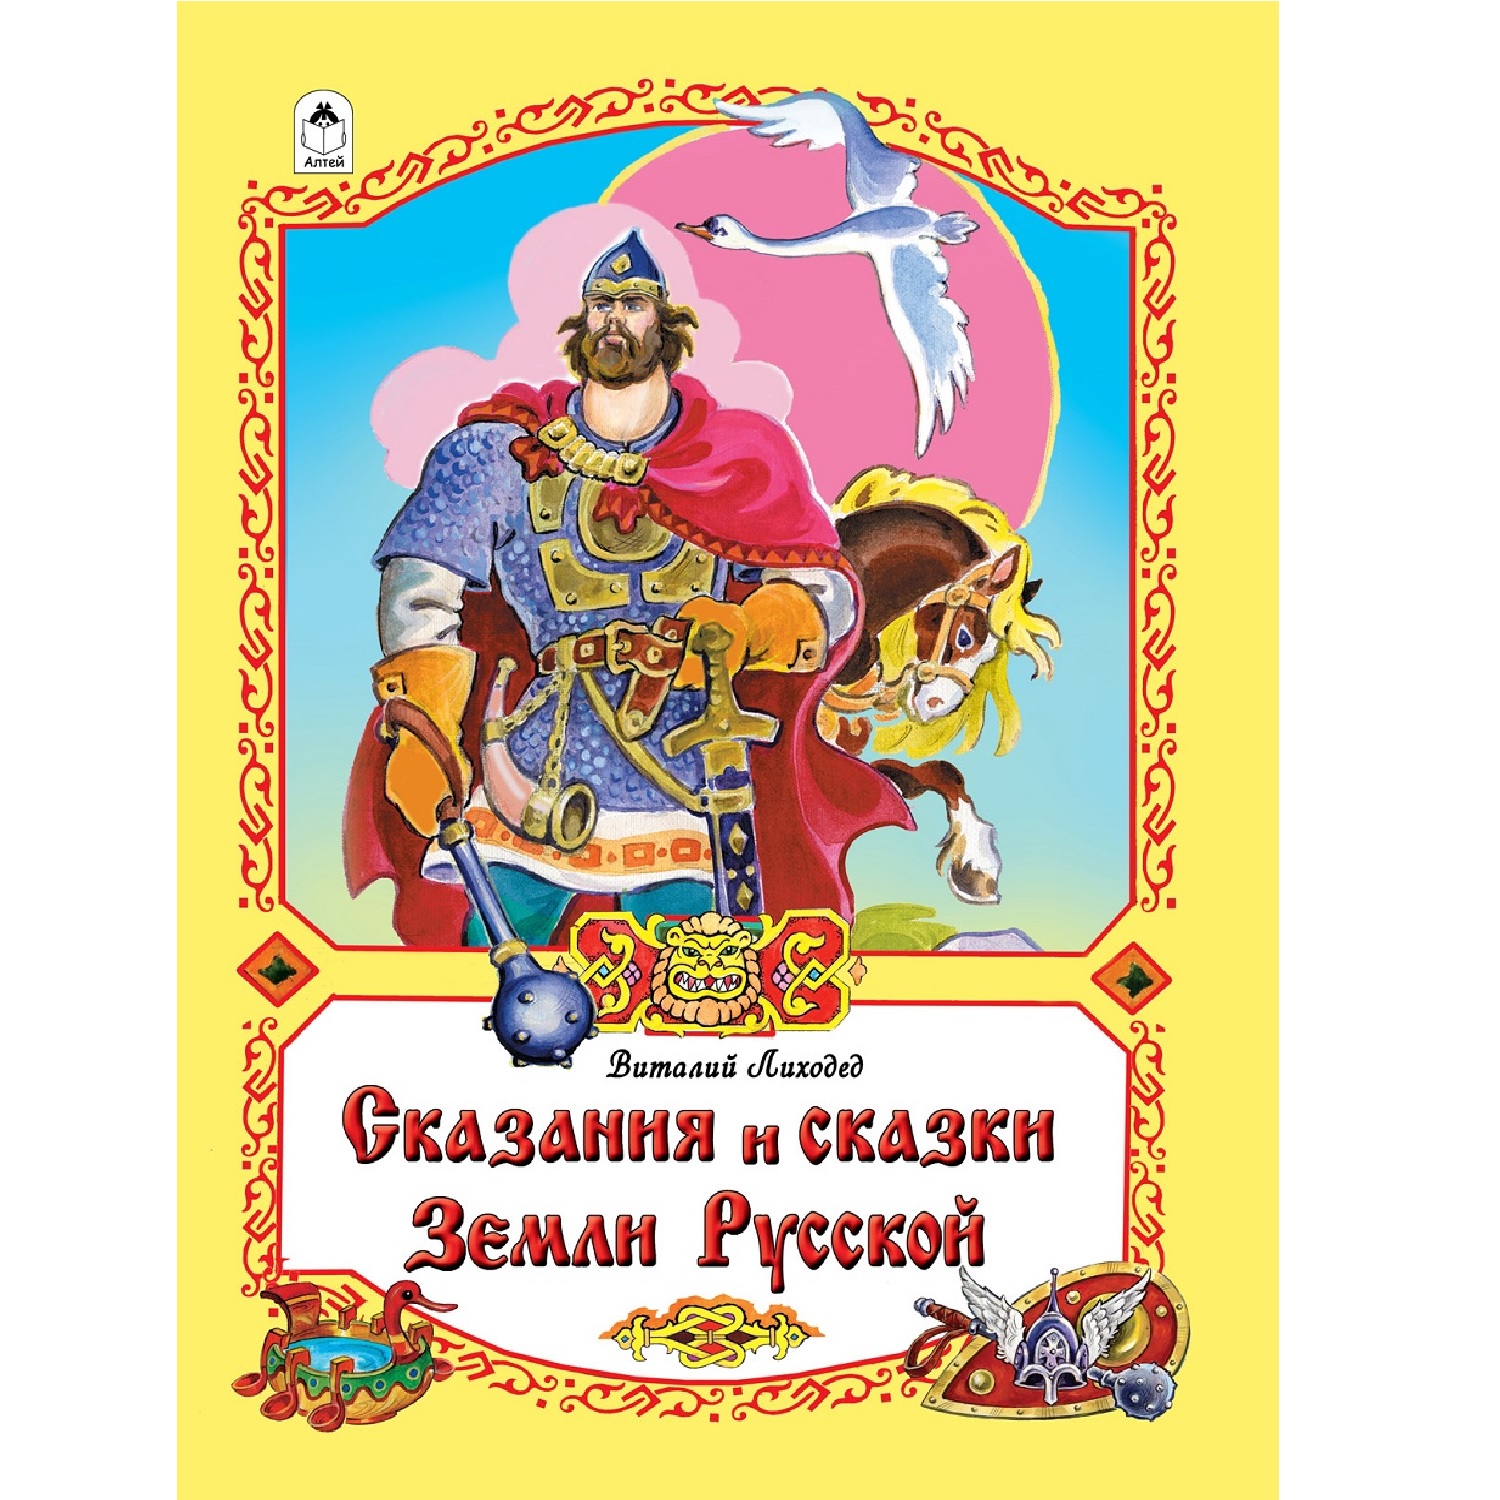 Книга Алтей Сказания и сказки Земли Русской - фото 1